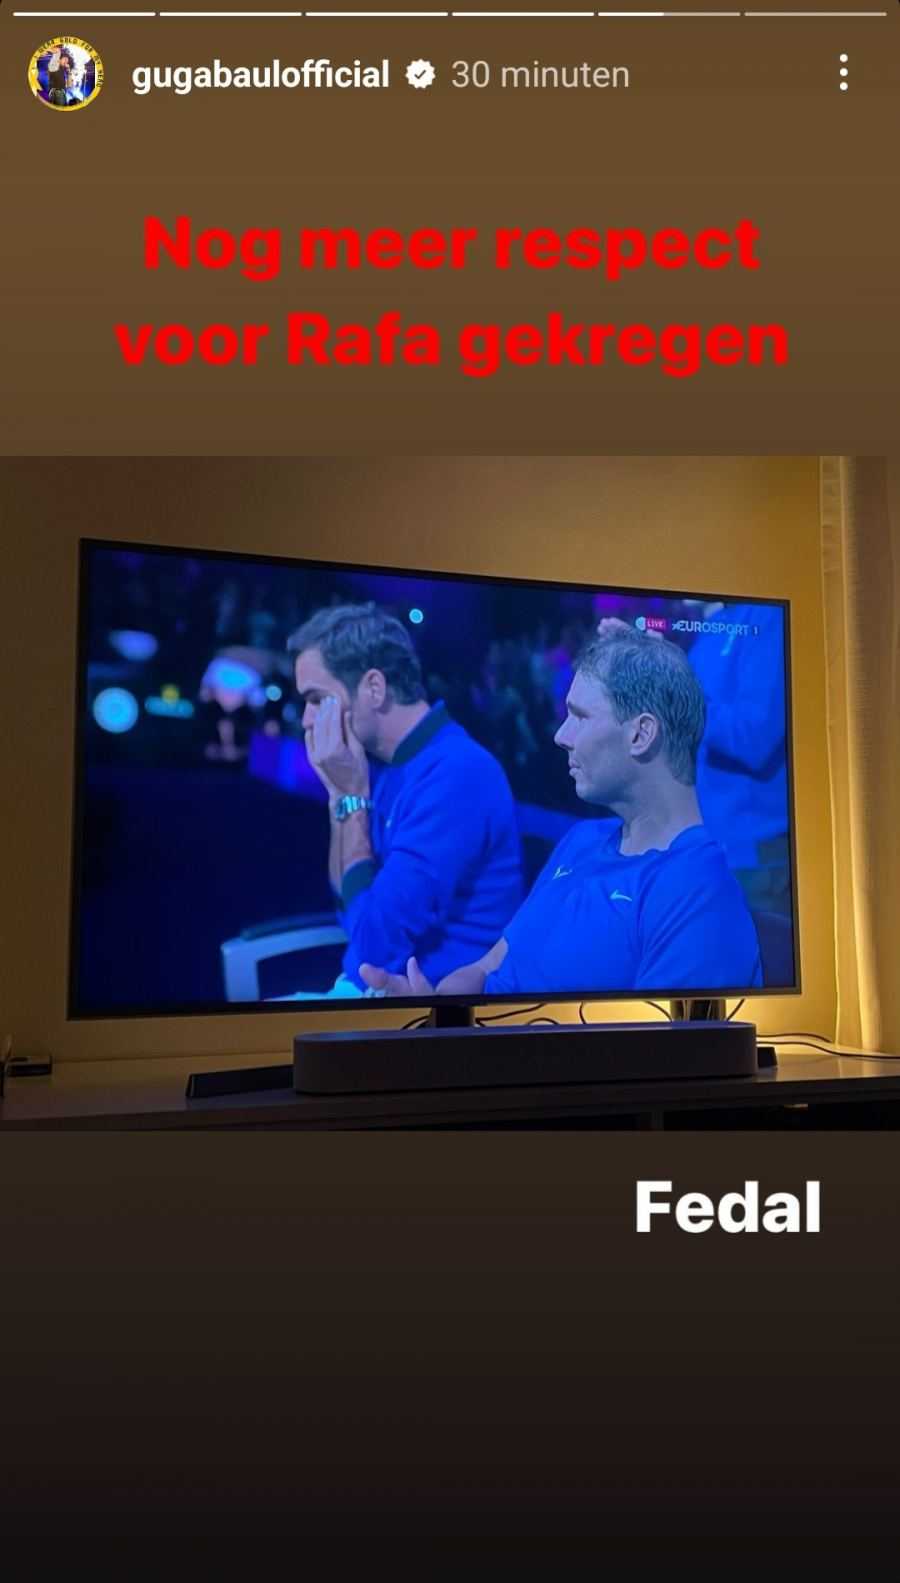 Guga Baul Instagram Federer 3